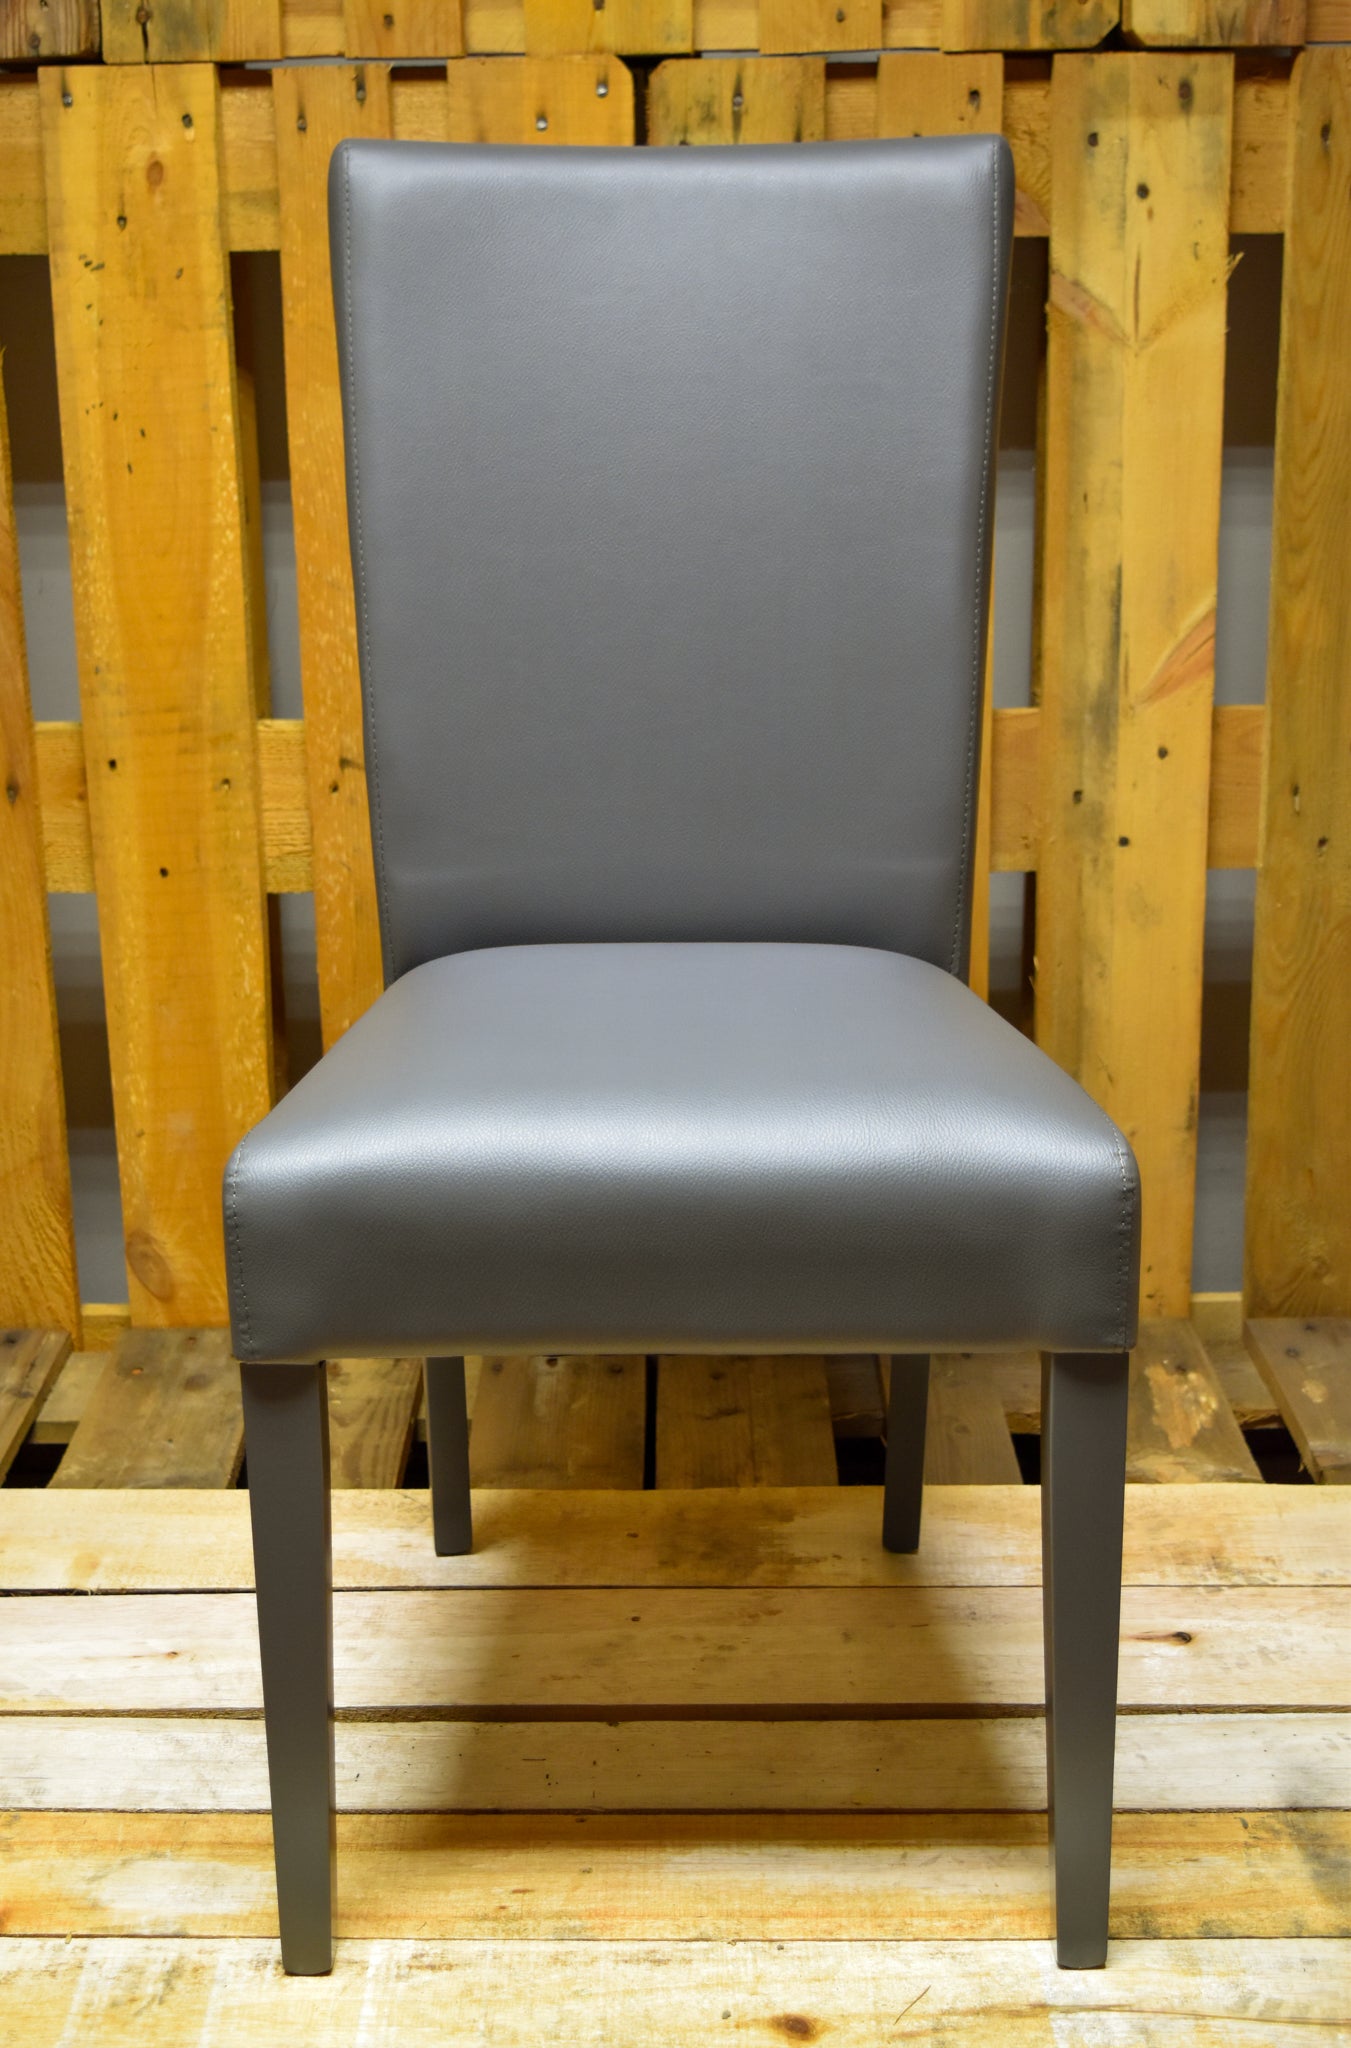 Stock model 46 padded dark gray chairs